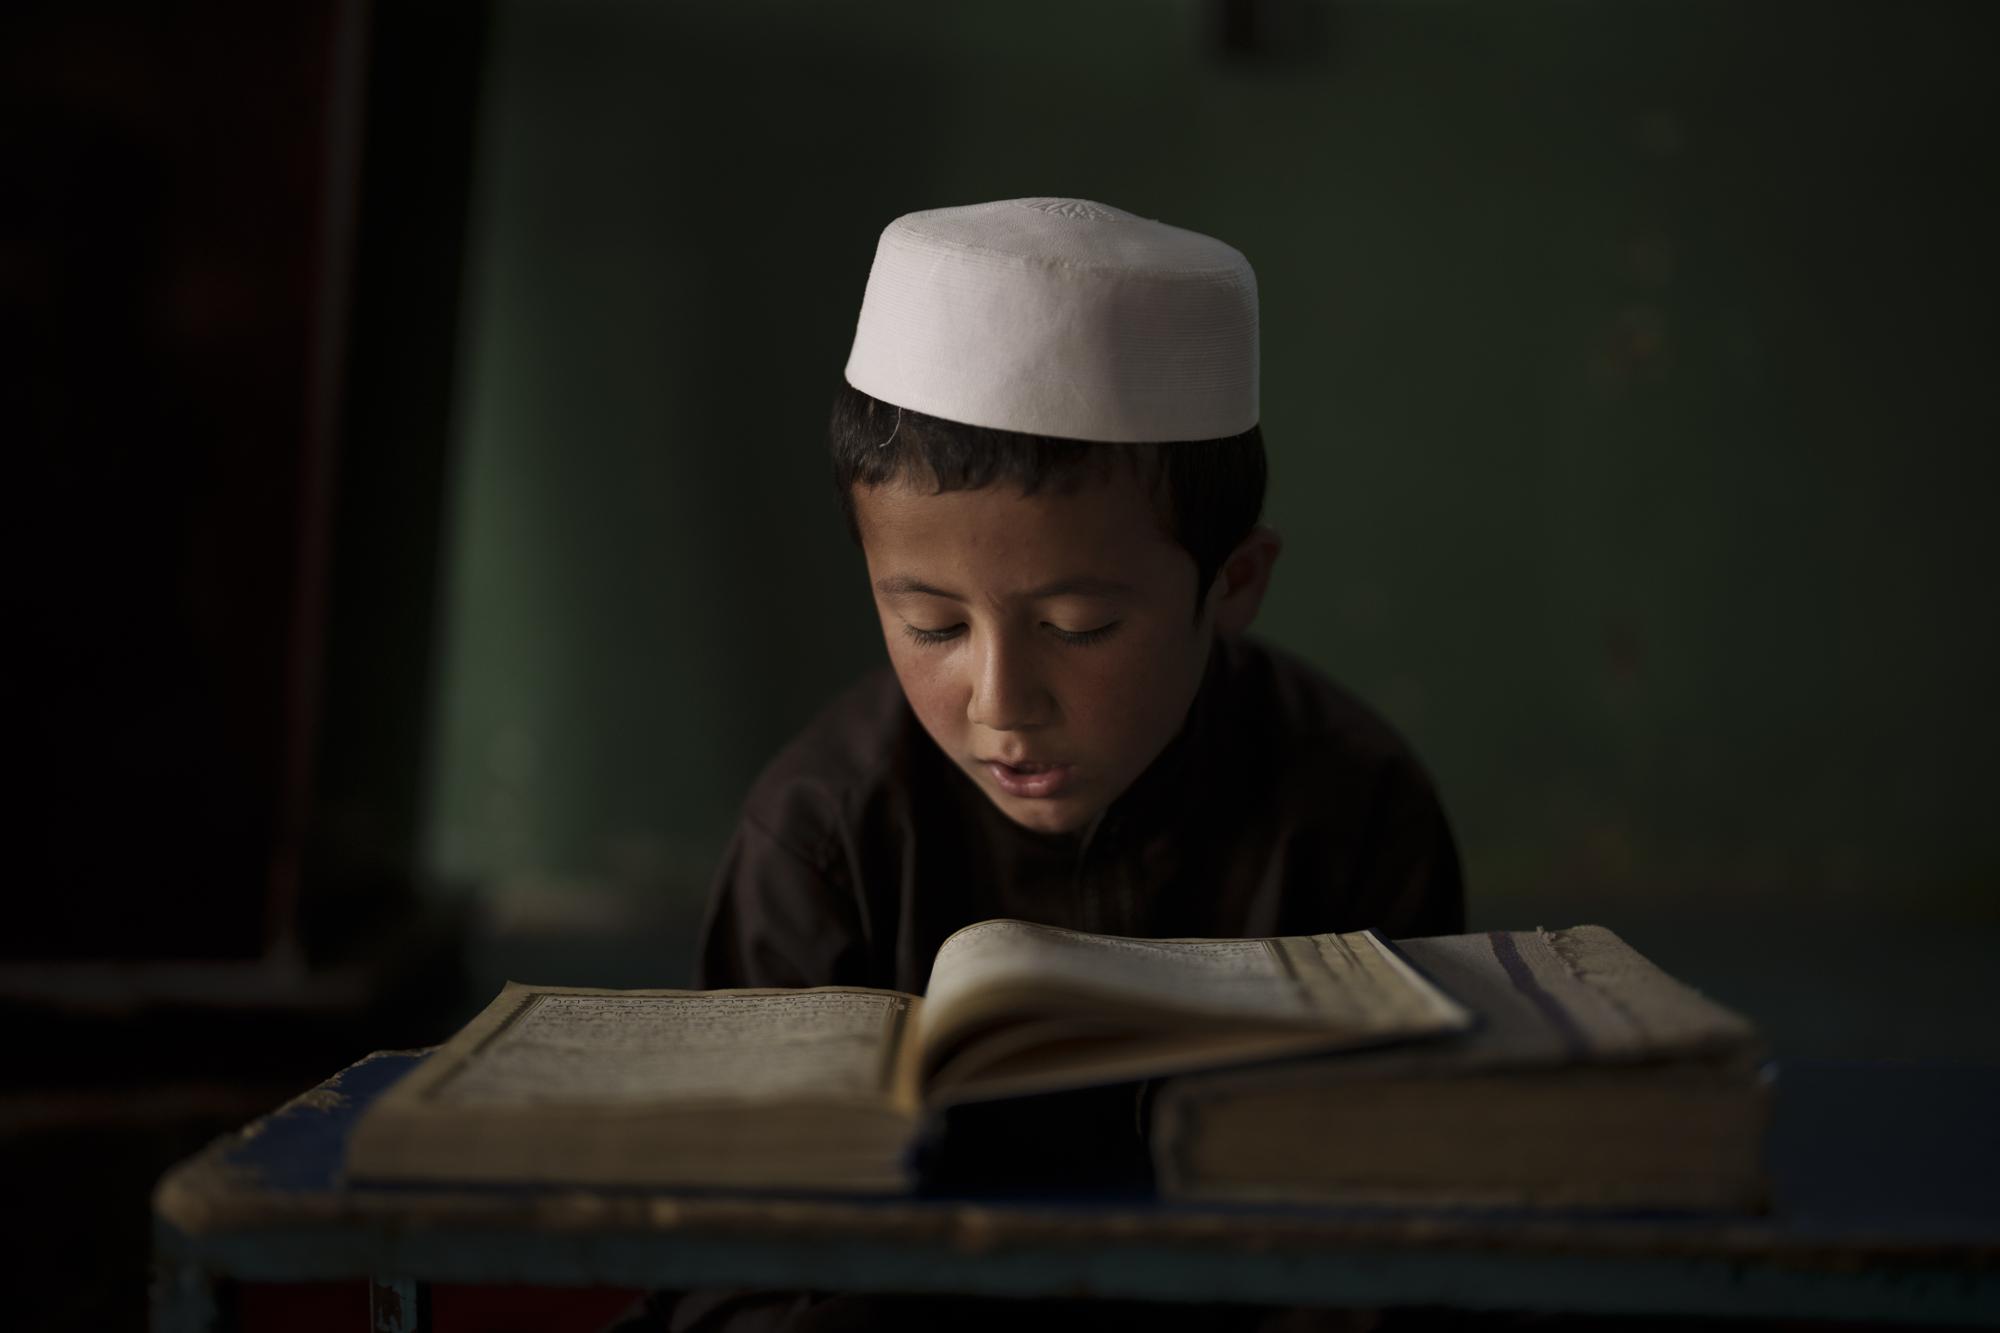 آموزش ریاضی با گلوله؛ مدارس افغانستان چطور تبدیل به ماشین تولید تروریسم طالبان شدند؟